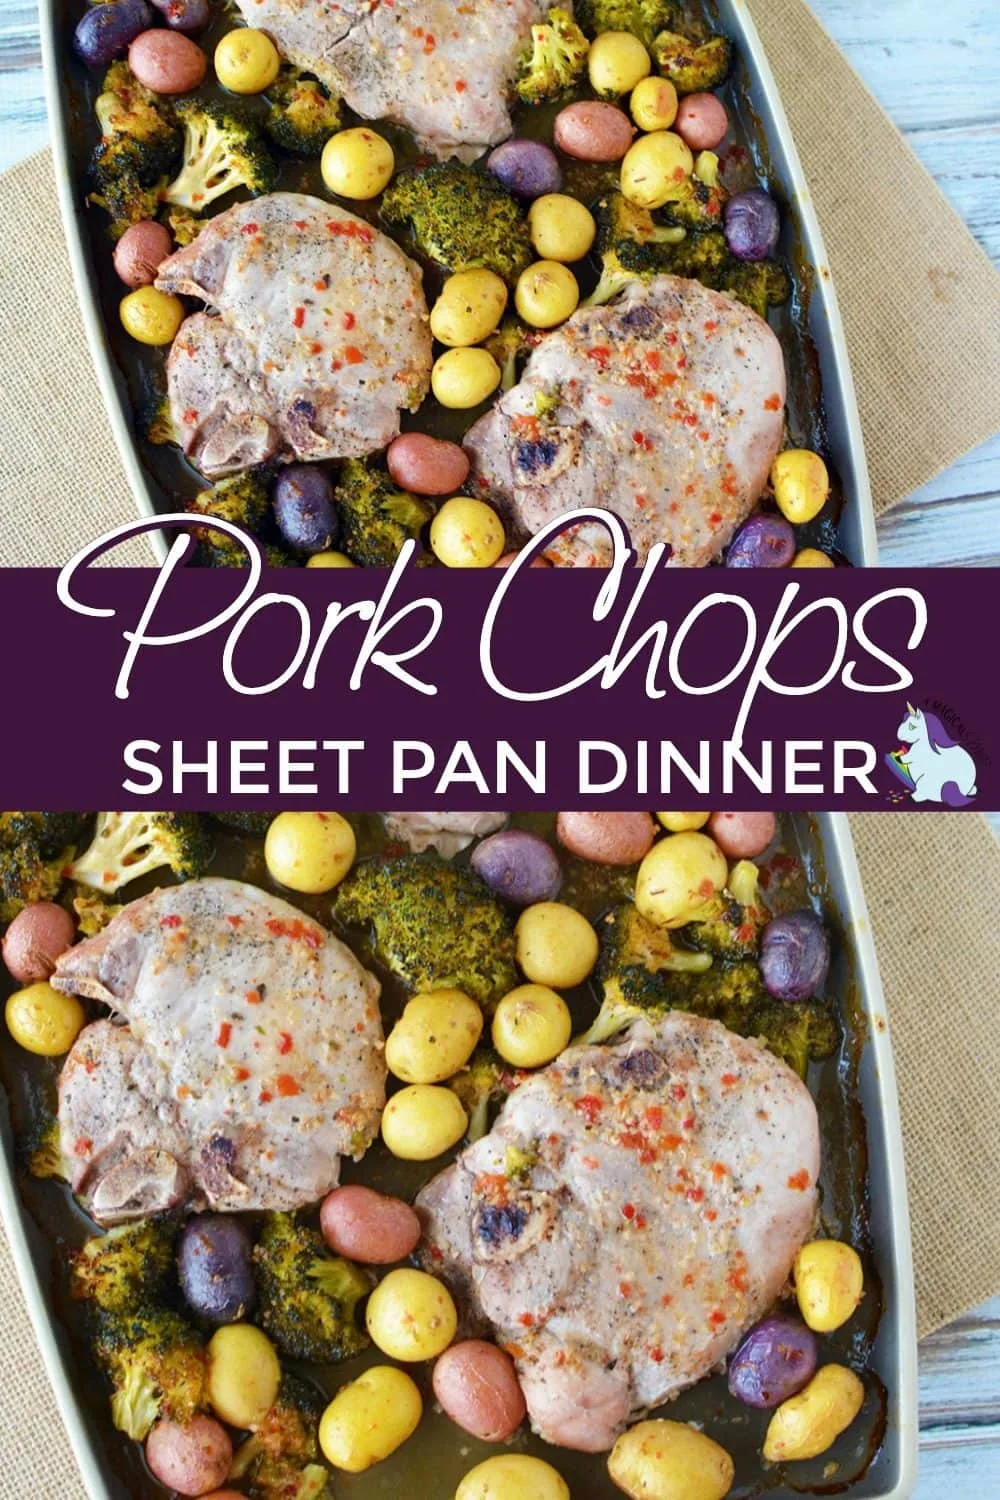 Sheet pan pork chops dinner